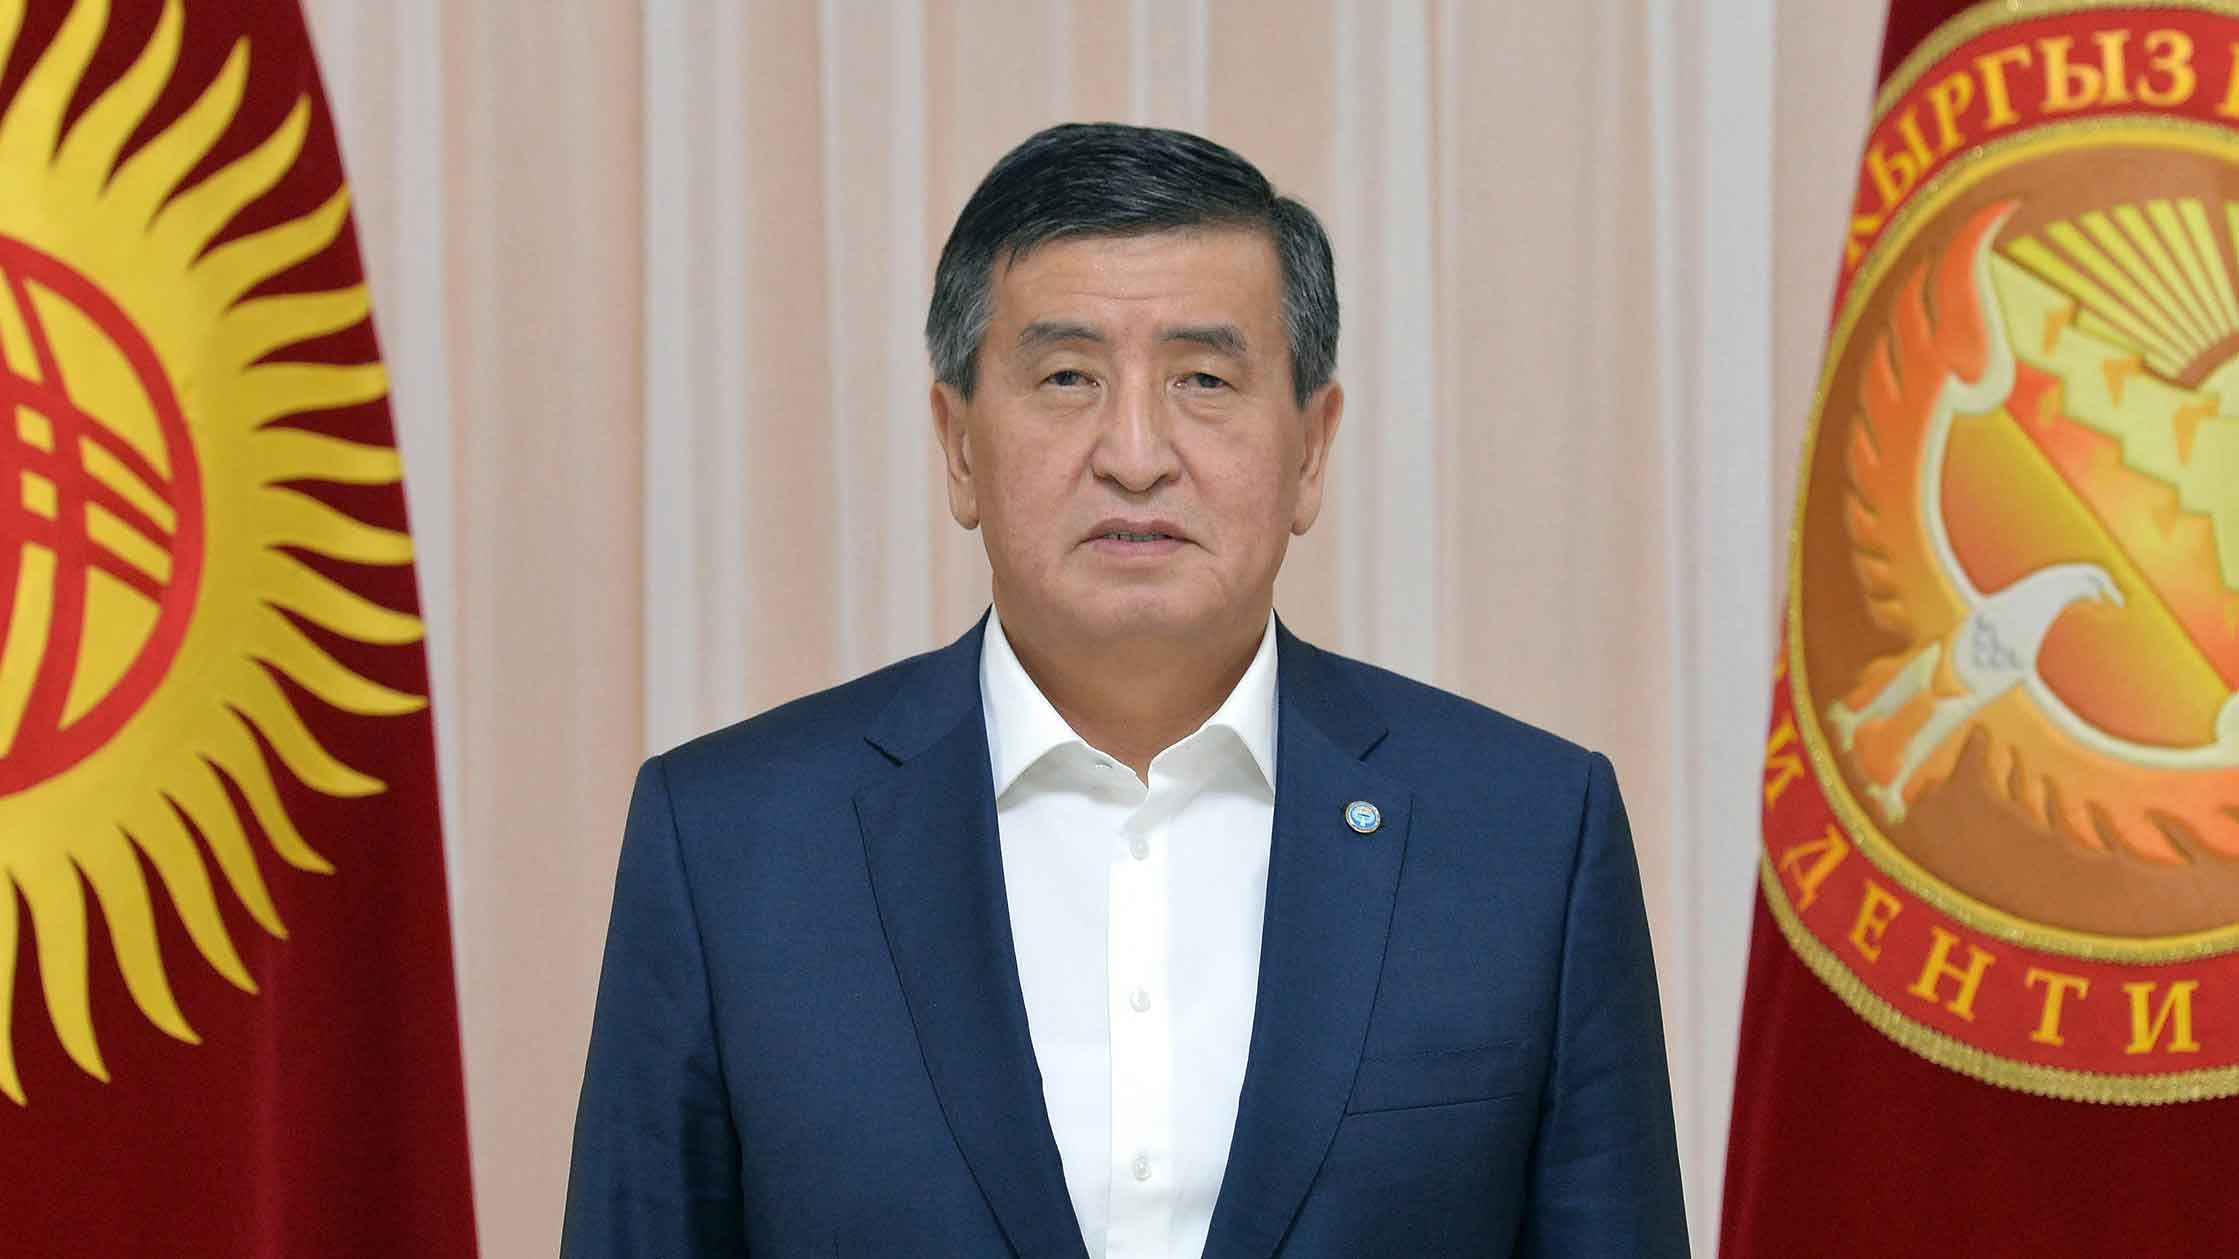 Политик признался, что не желает остаться в истории как «президент, проливший кровь и стрелявший в собственных граждан» Фото: © GLOBAL LOOK press / Kyrgyz President Press Service